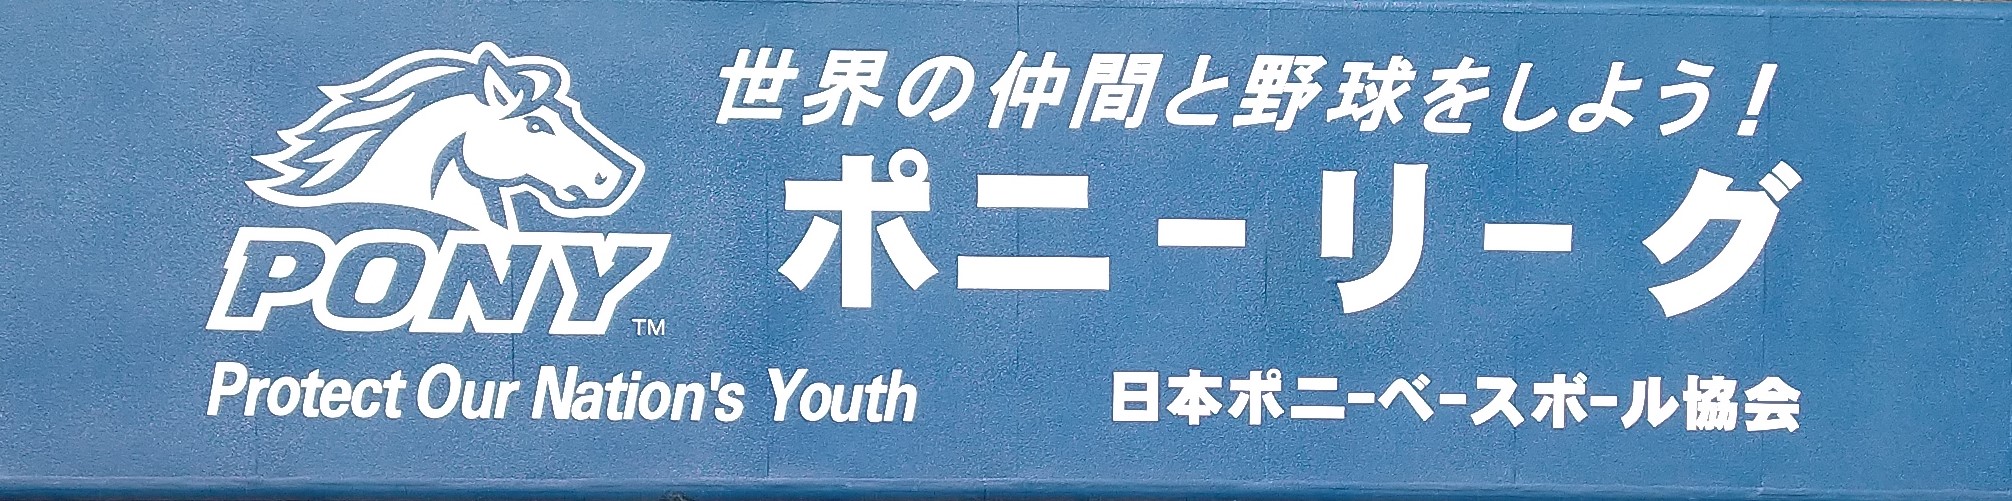 日本ポニーベースボール協会様広告